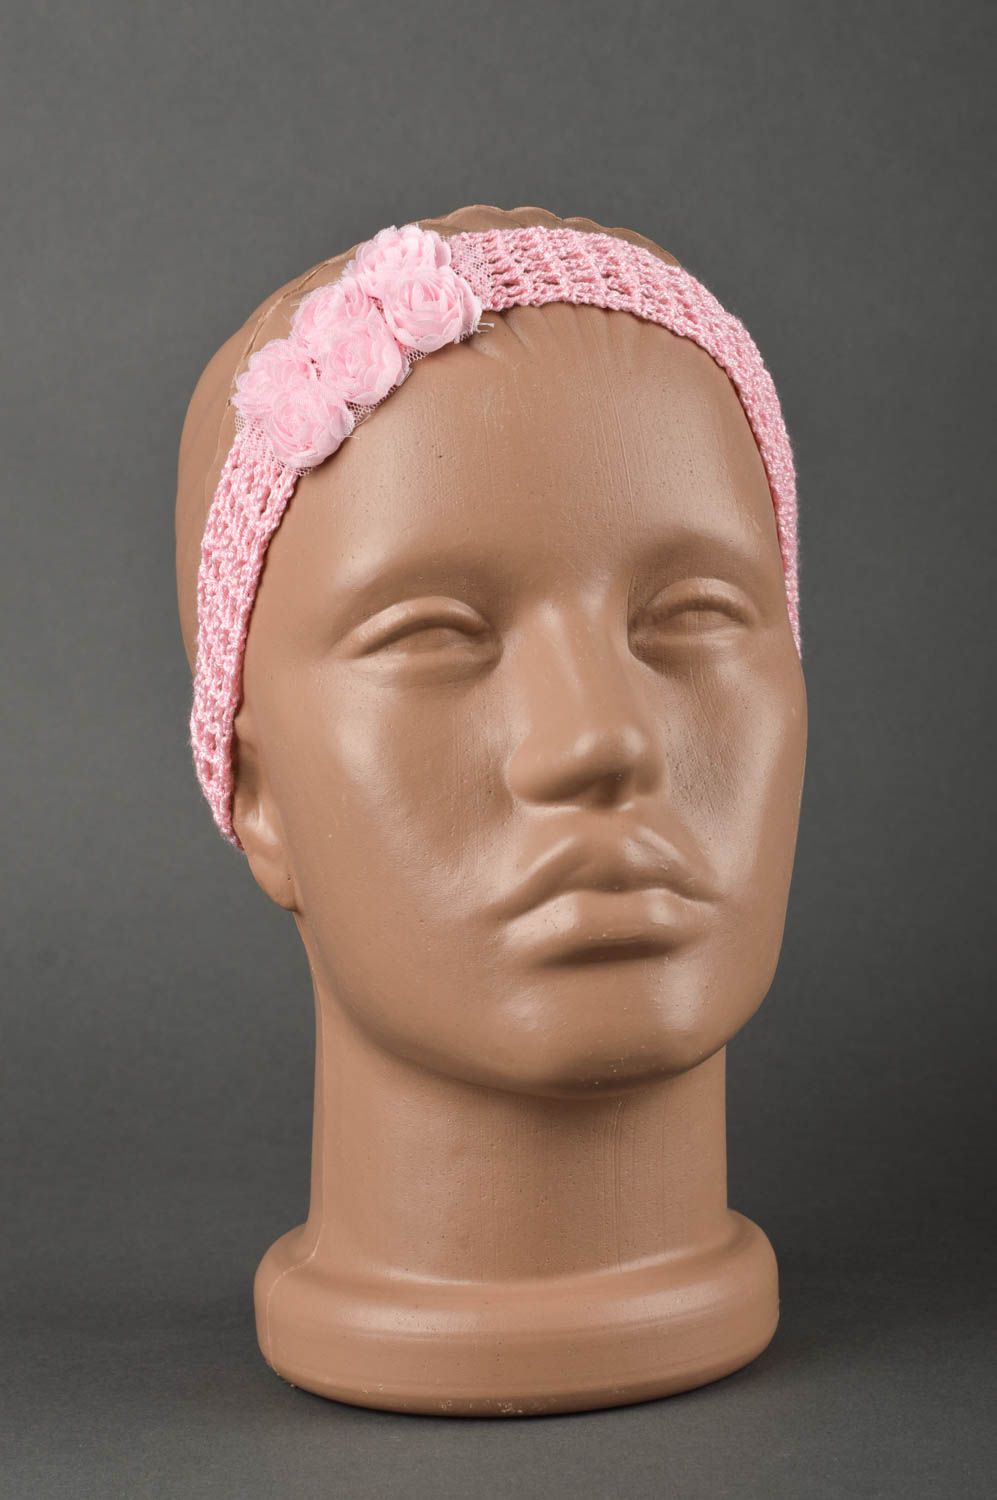 Модная повязка на голову ручной работы повязка для девочки детская повязка роза фото 1